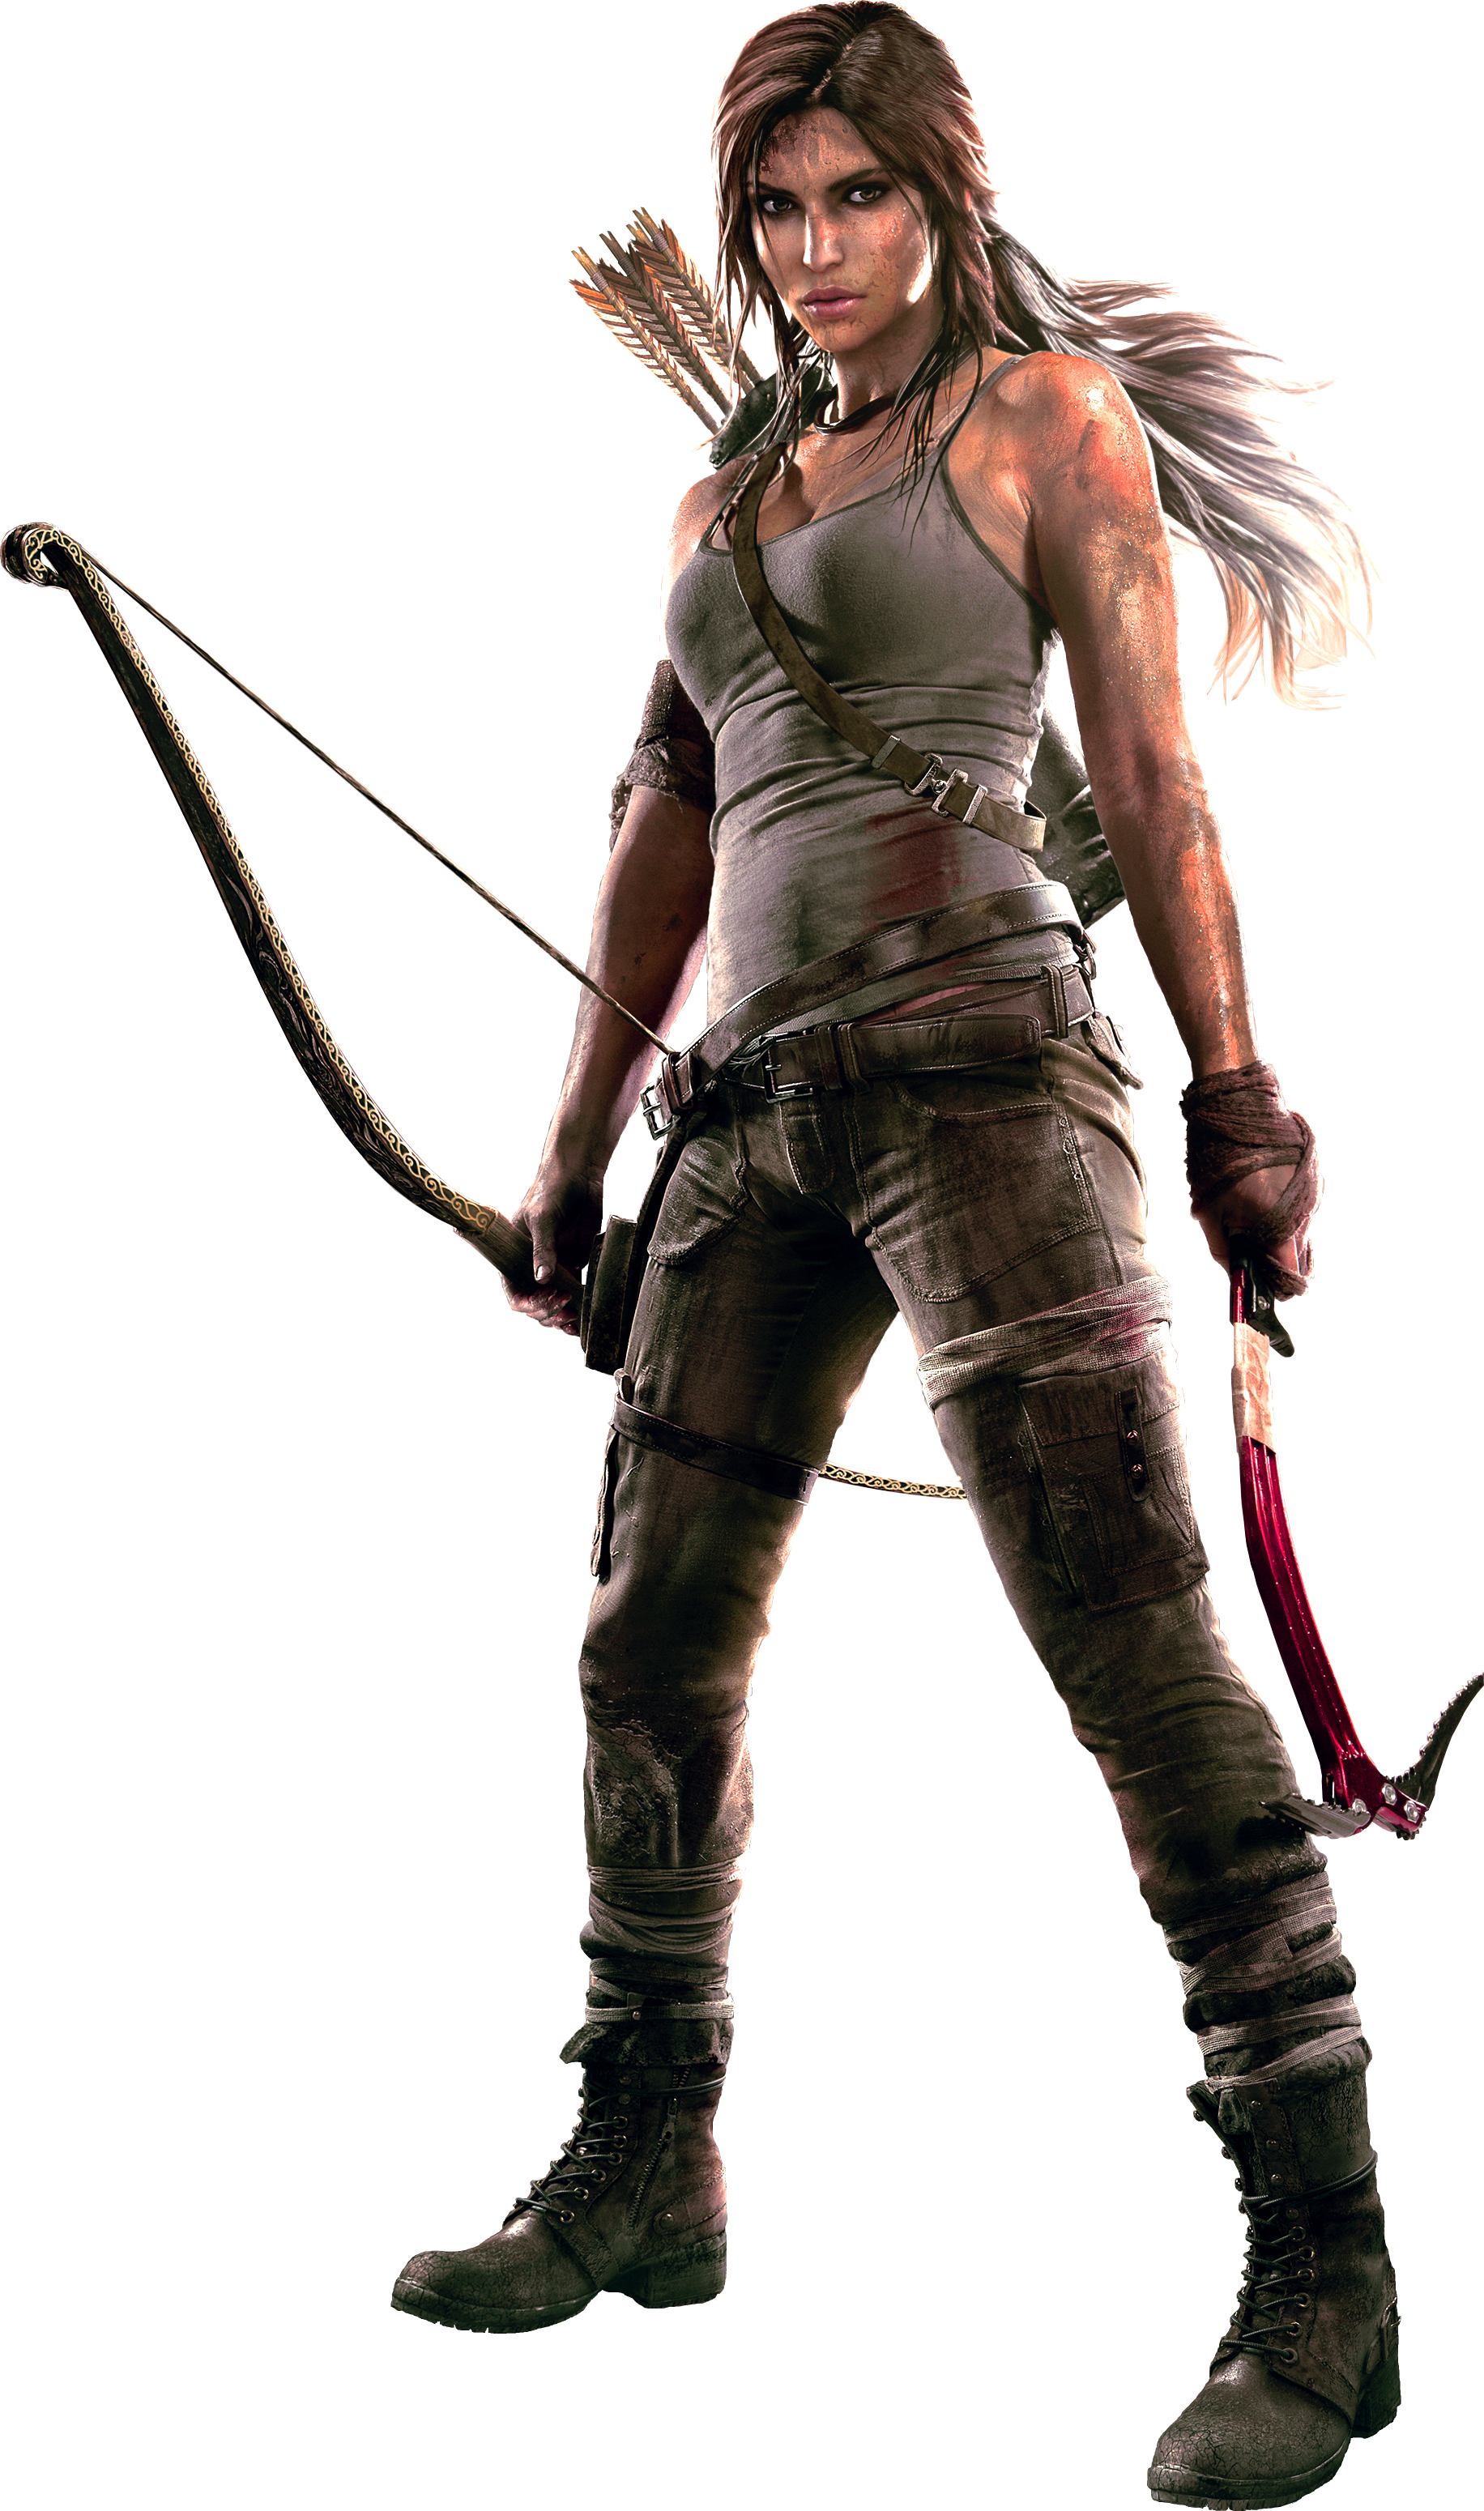 Lara Croft PNG Photos